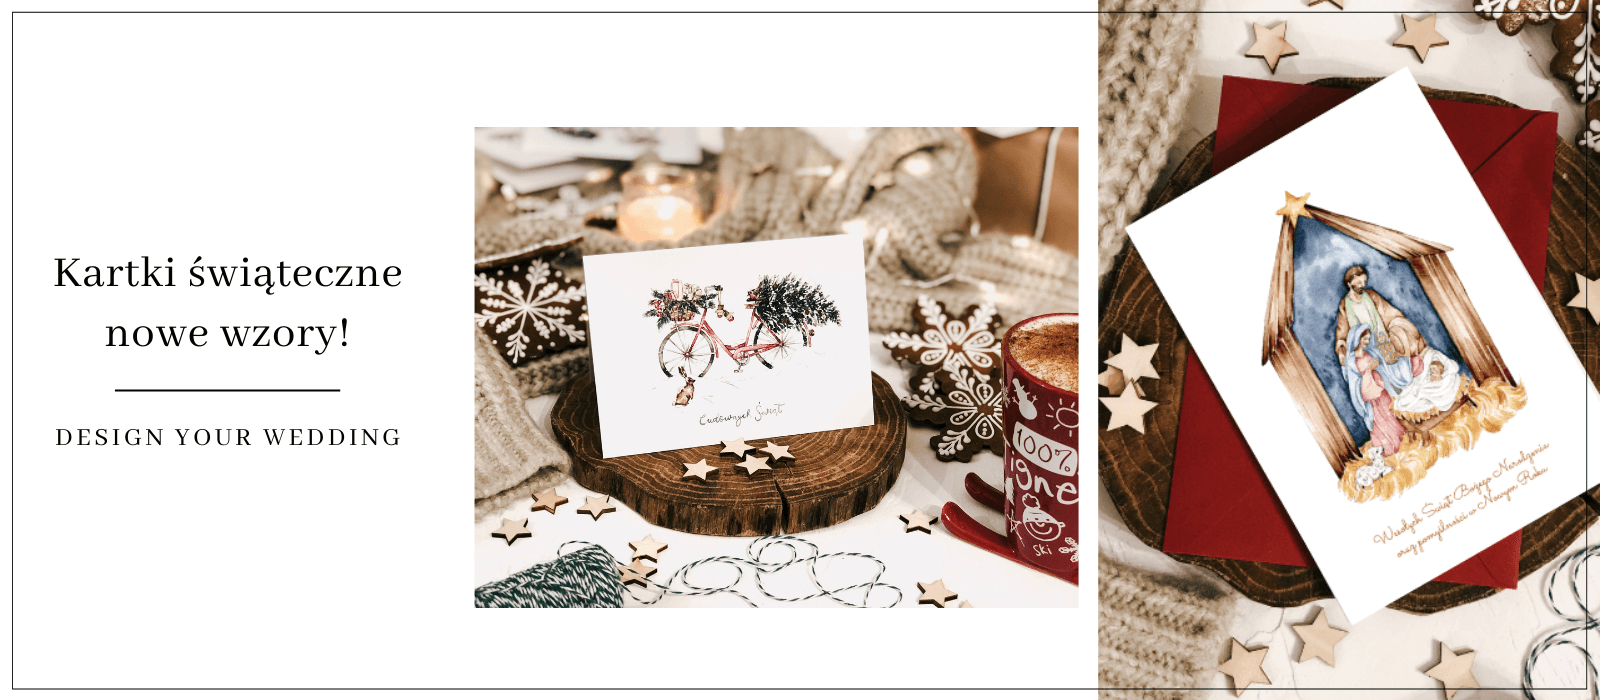 Życzenia na Boże Narodzenie_ co napisać w kartce _ Design Your Wedding (2)